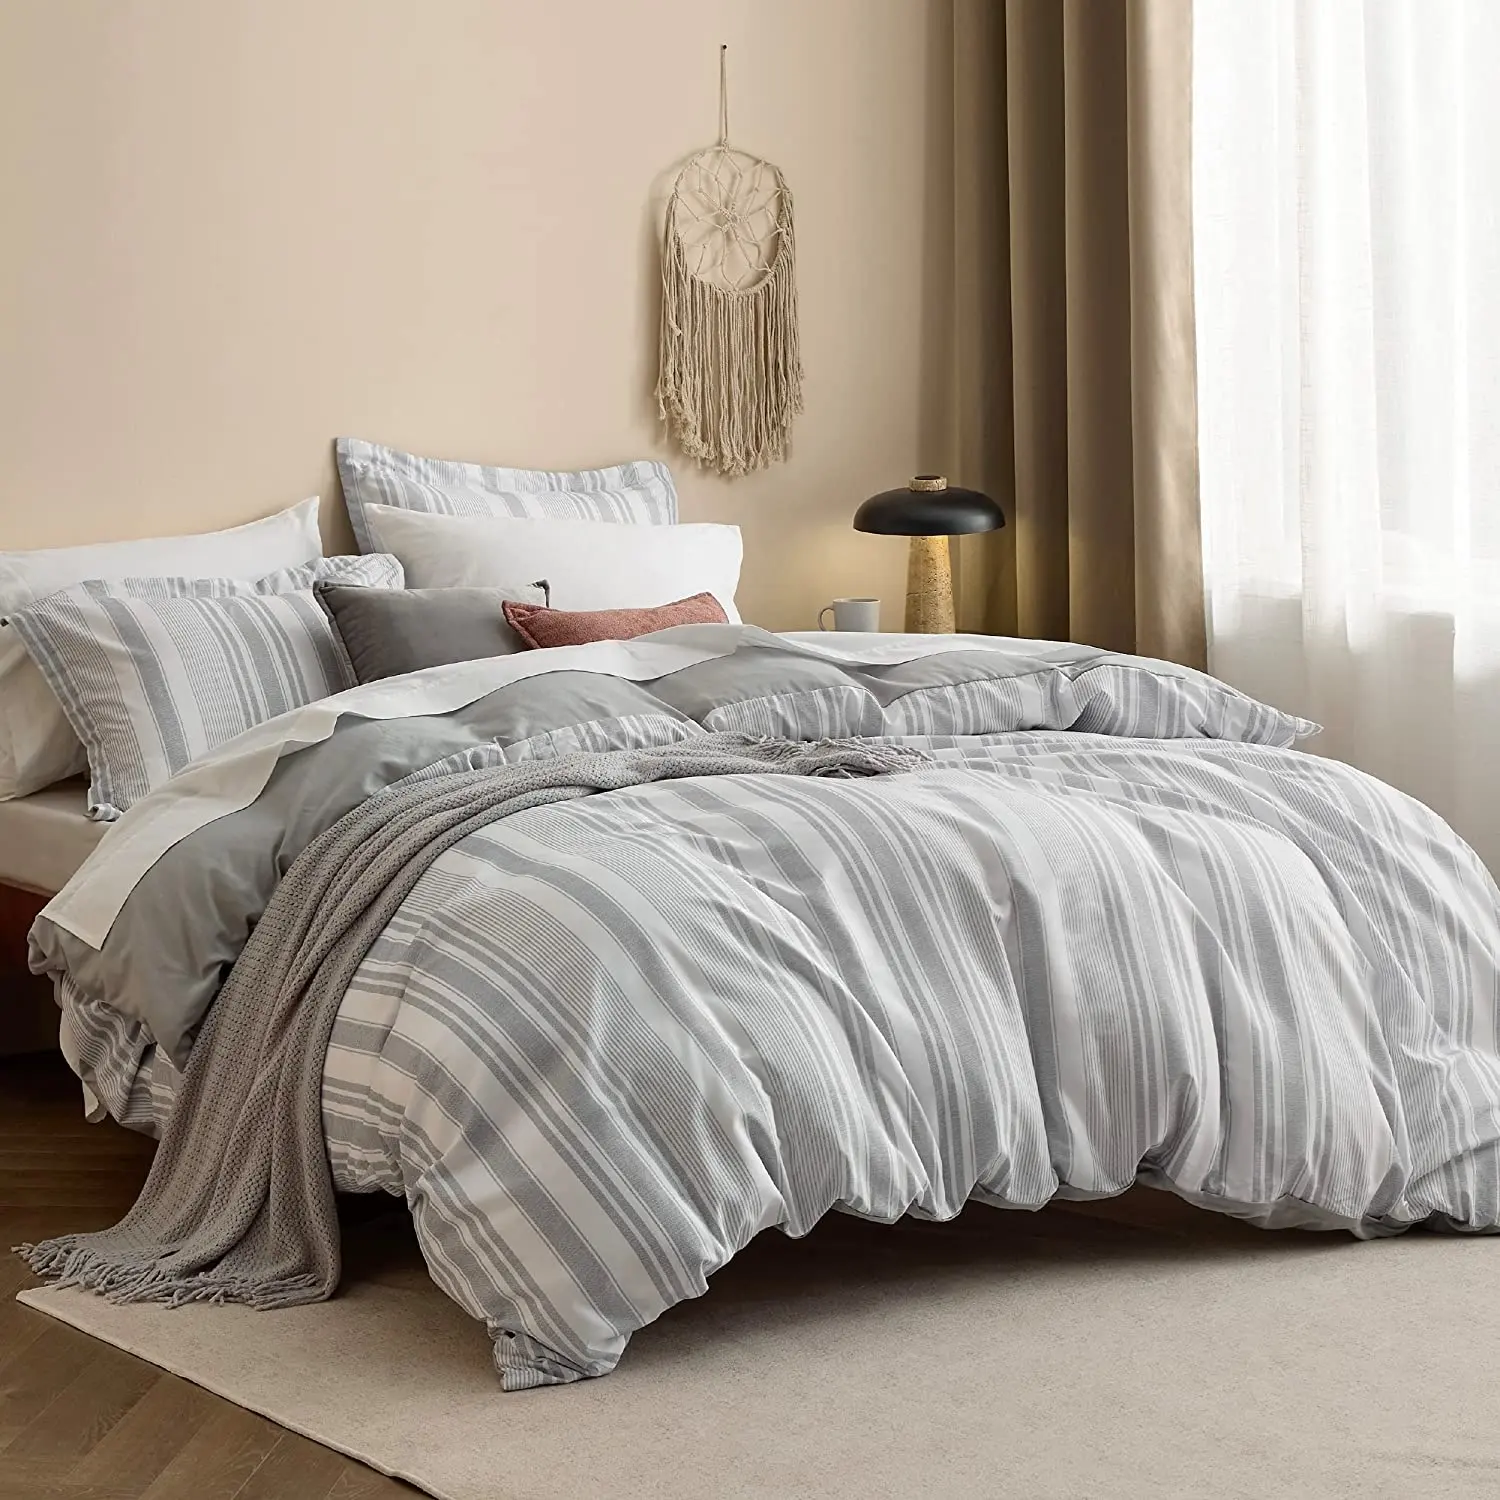 Sevimli tasarım polka dot hattı kafes basit tarzı yorgan seti polyester yatak seti çarşaf pamuk